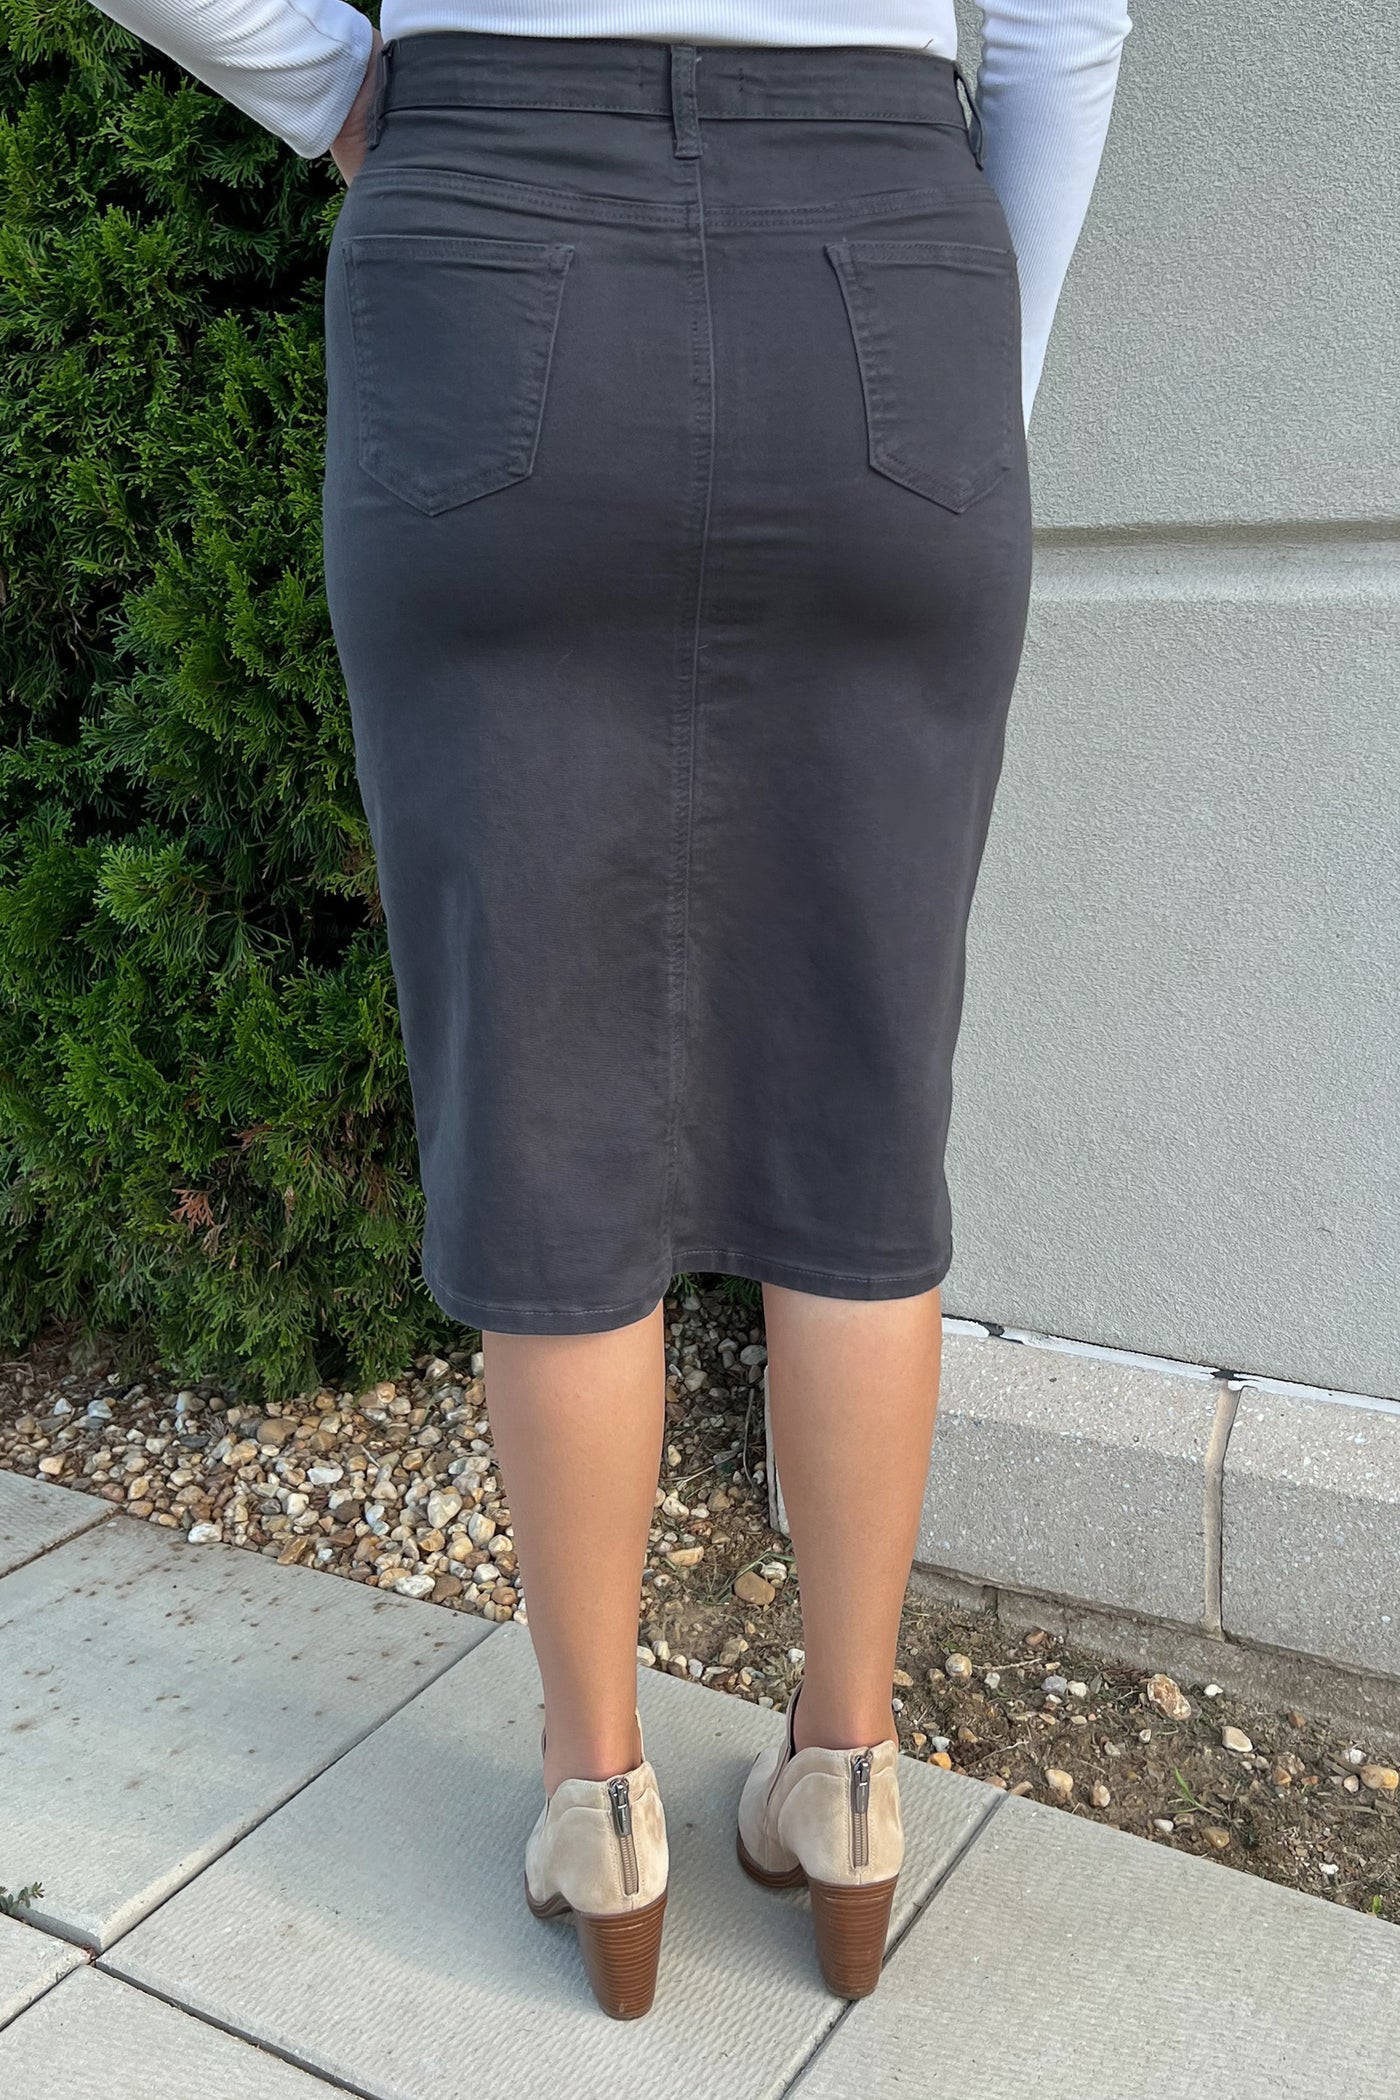 JDA Charcoal Gray Denim Skirt